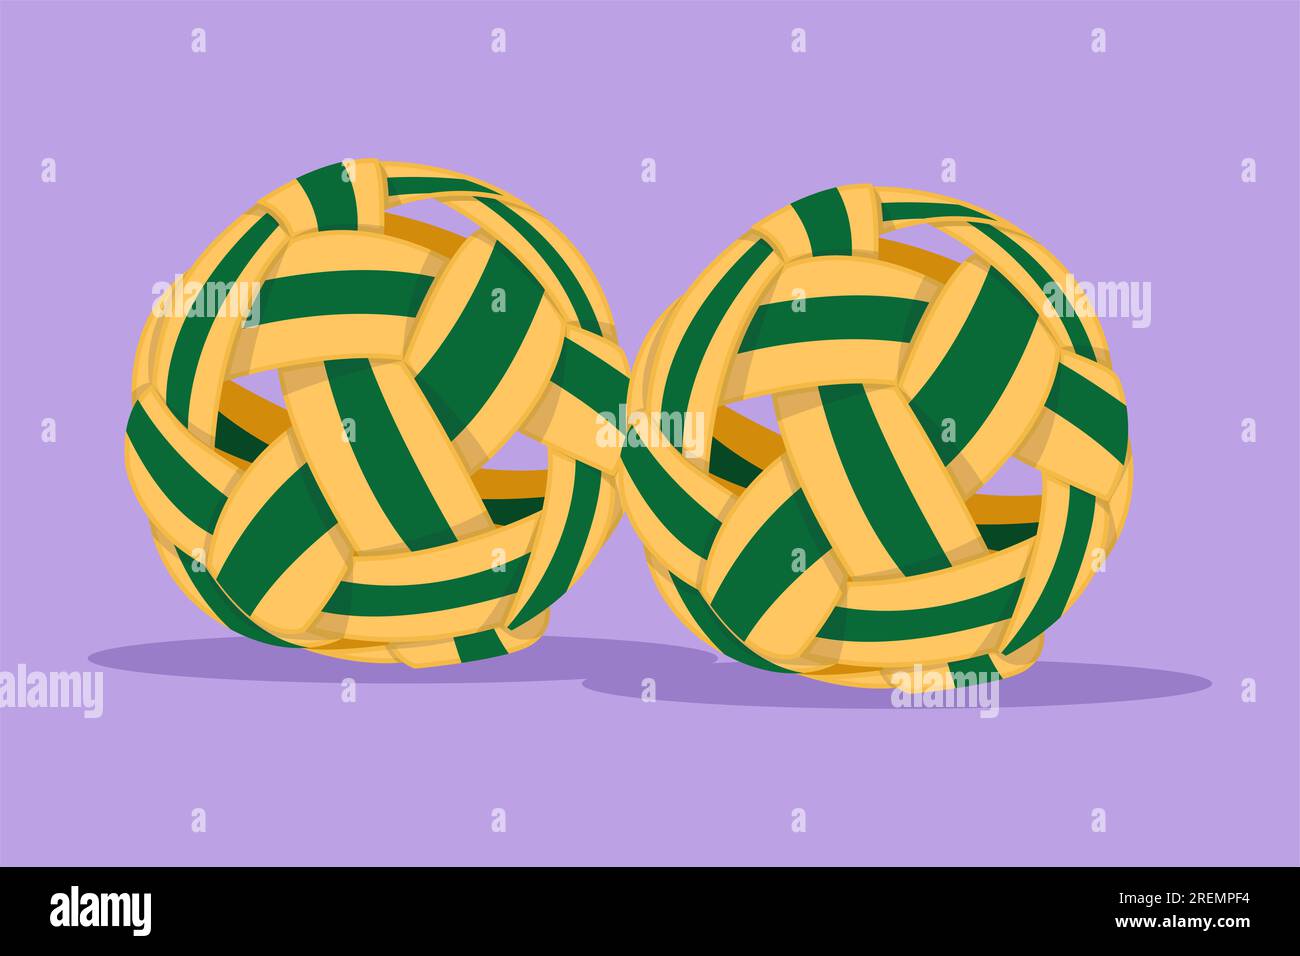 Dessin de style plat de dessin animé stylisé sepak takraw ball ou rotin ball logo, symbole. Coup de pied en ciseaux. Compétition sportive par équipe, tournoi, Sud-est ou ASI Banque D'Images